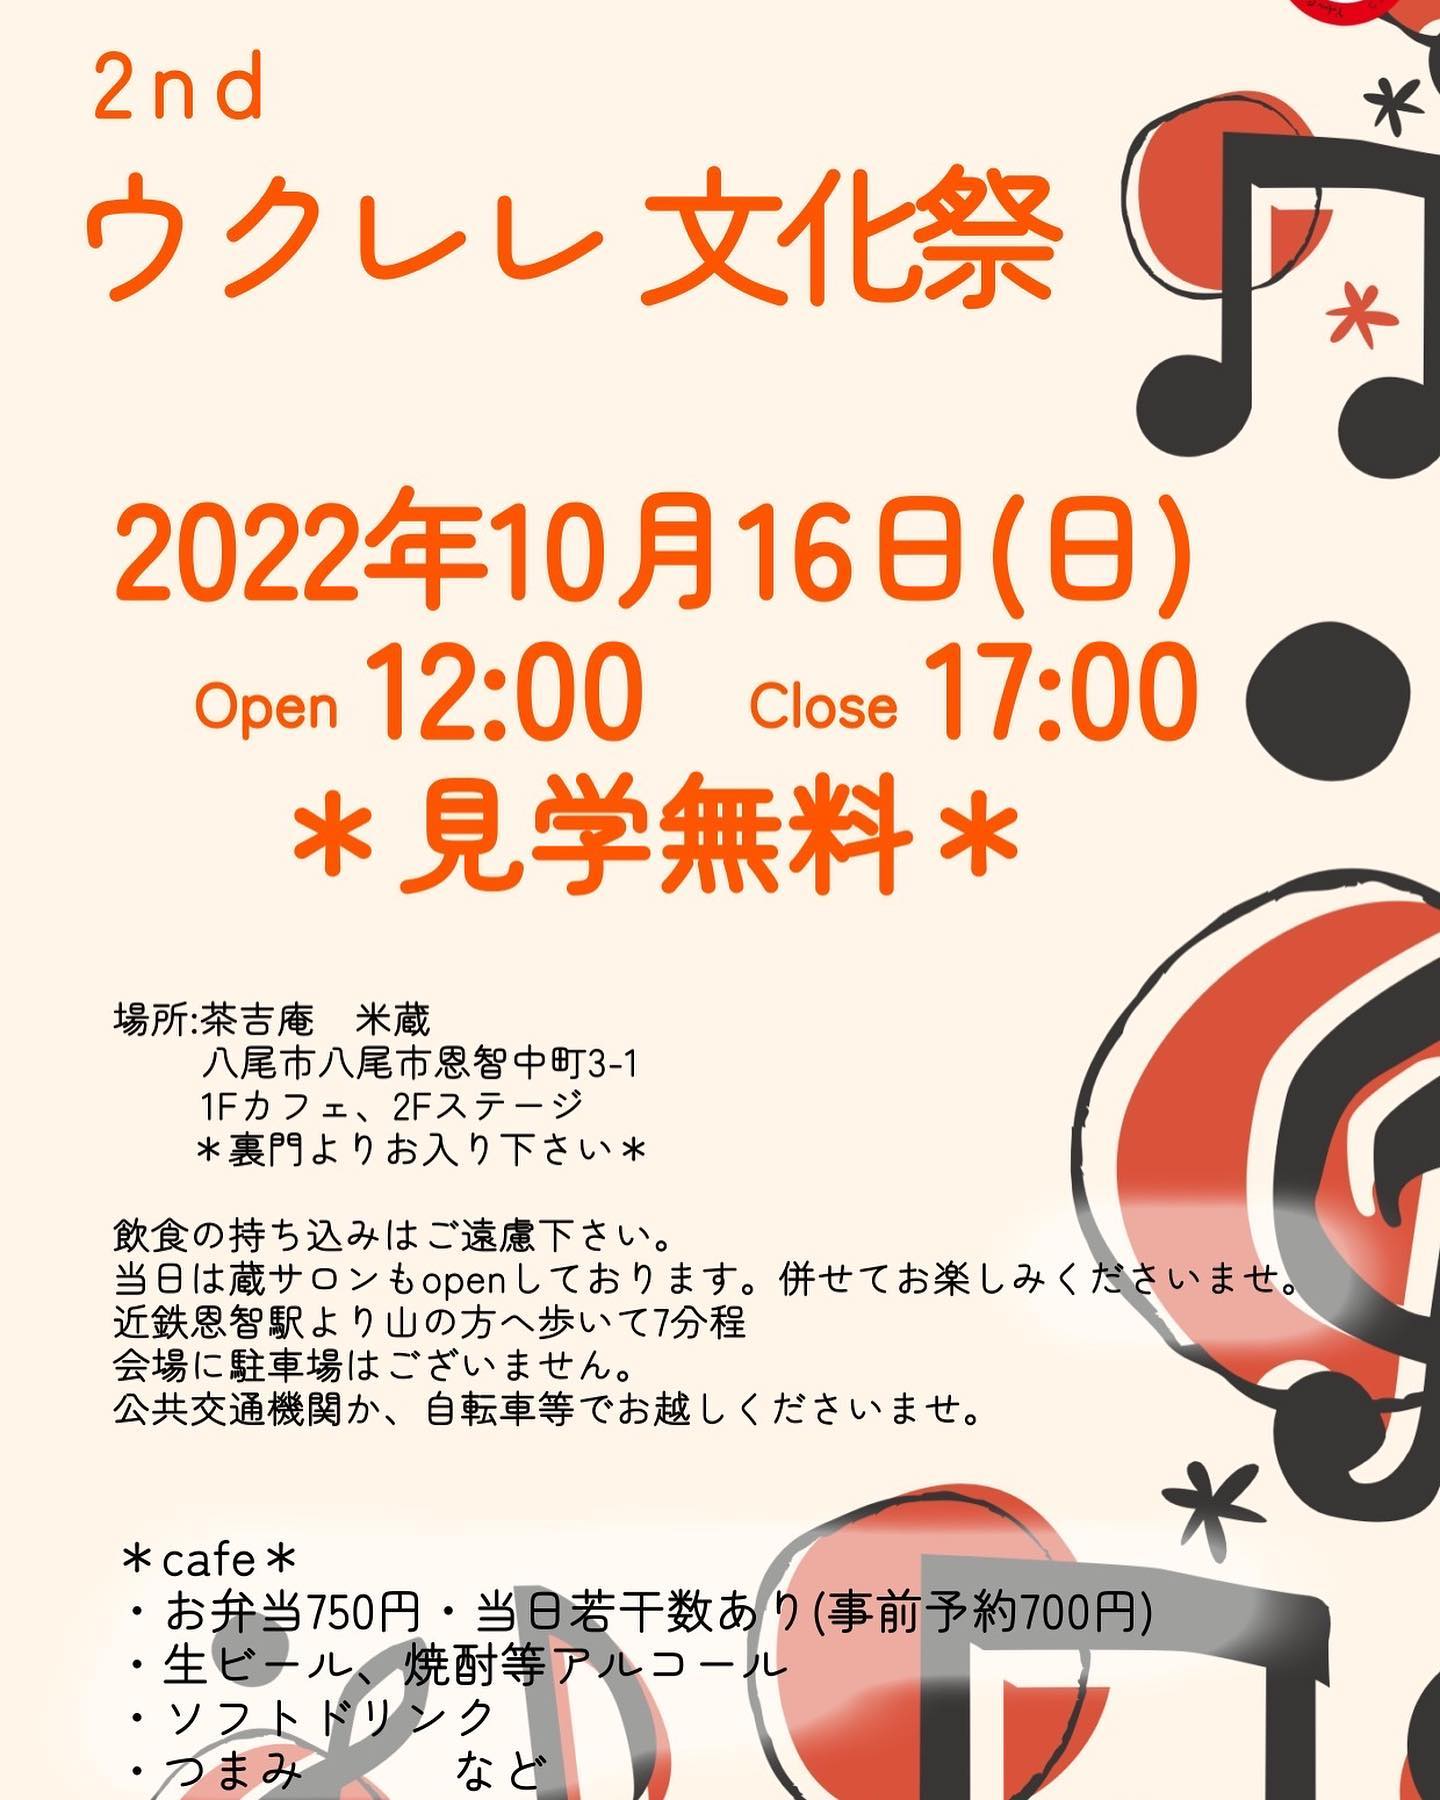 【2022.10.16】２nd ウクレレ文化祭